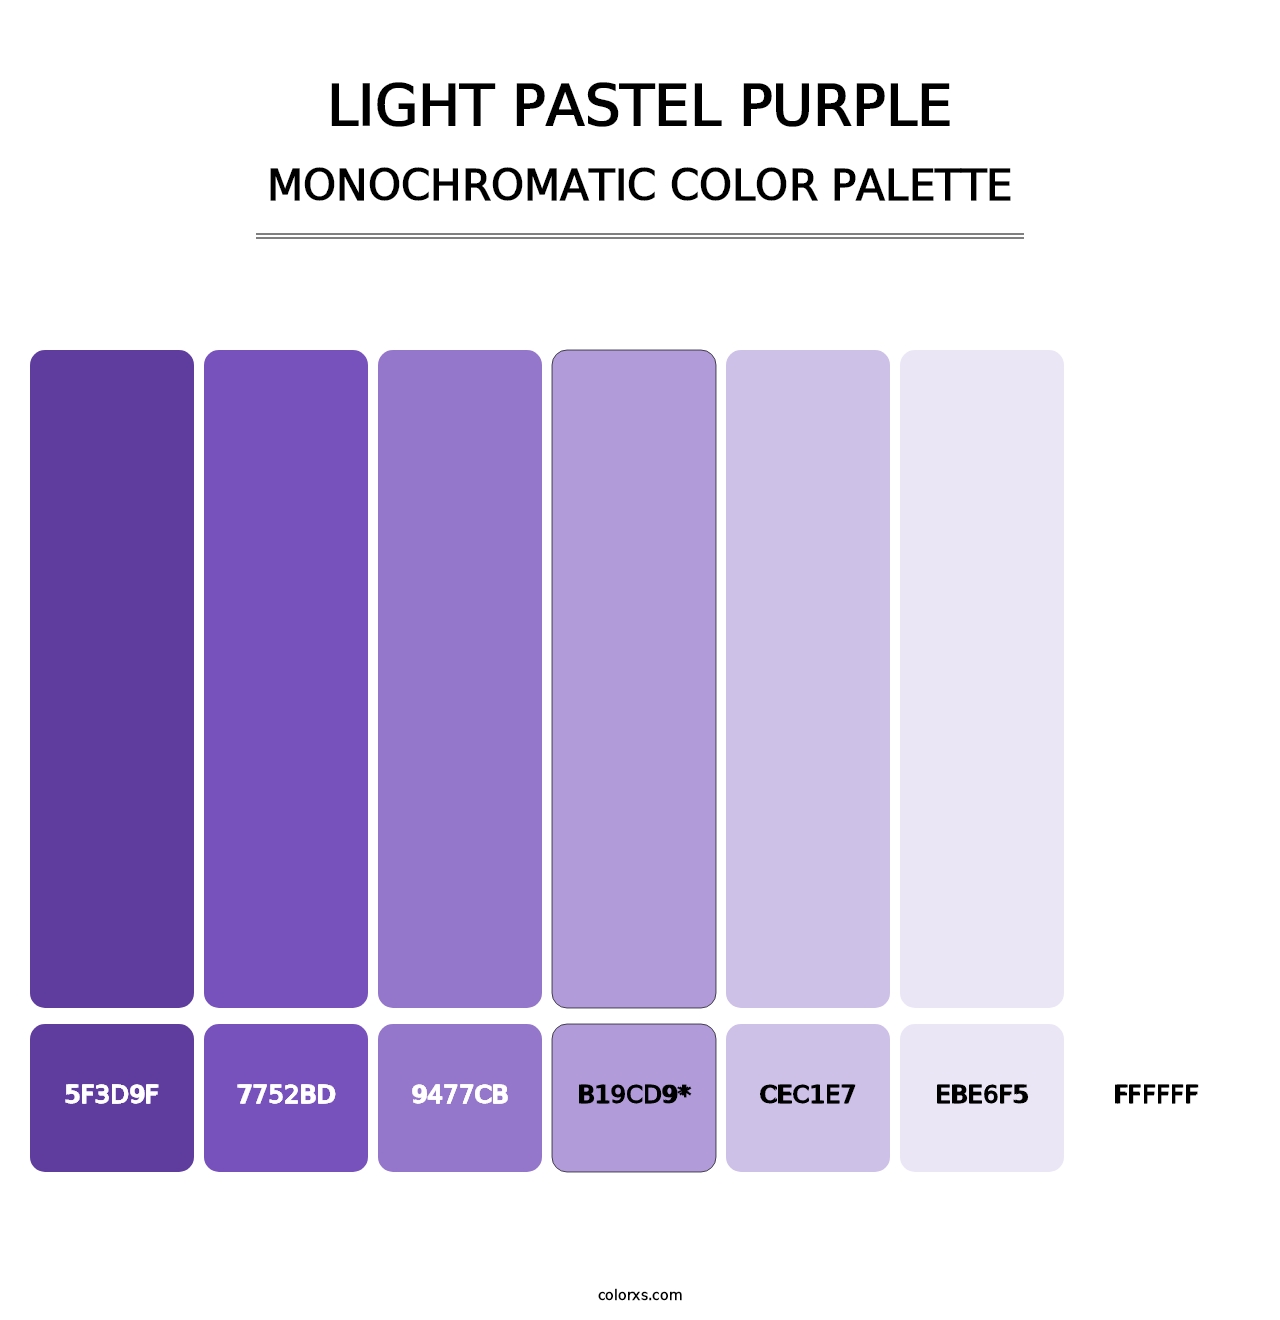 Light Pastel Purple - Monochromatic Color Palette